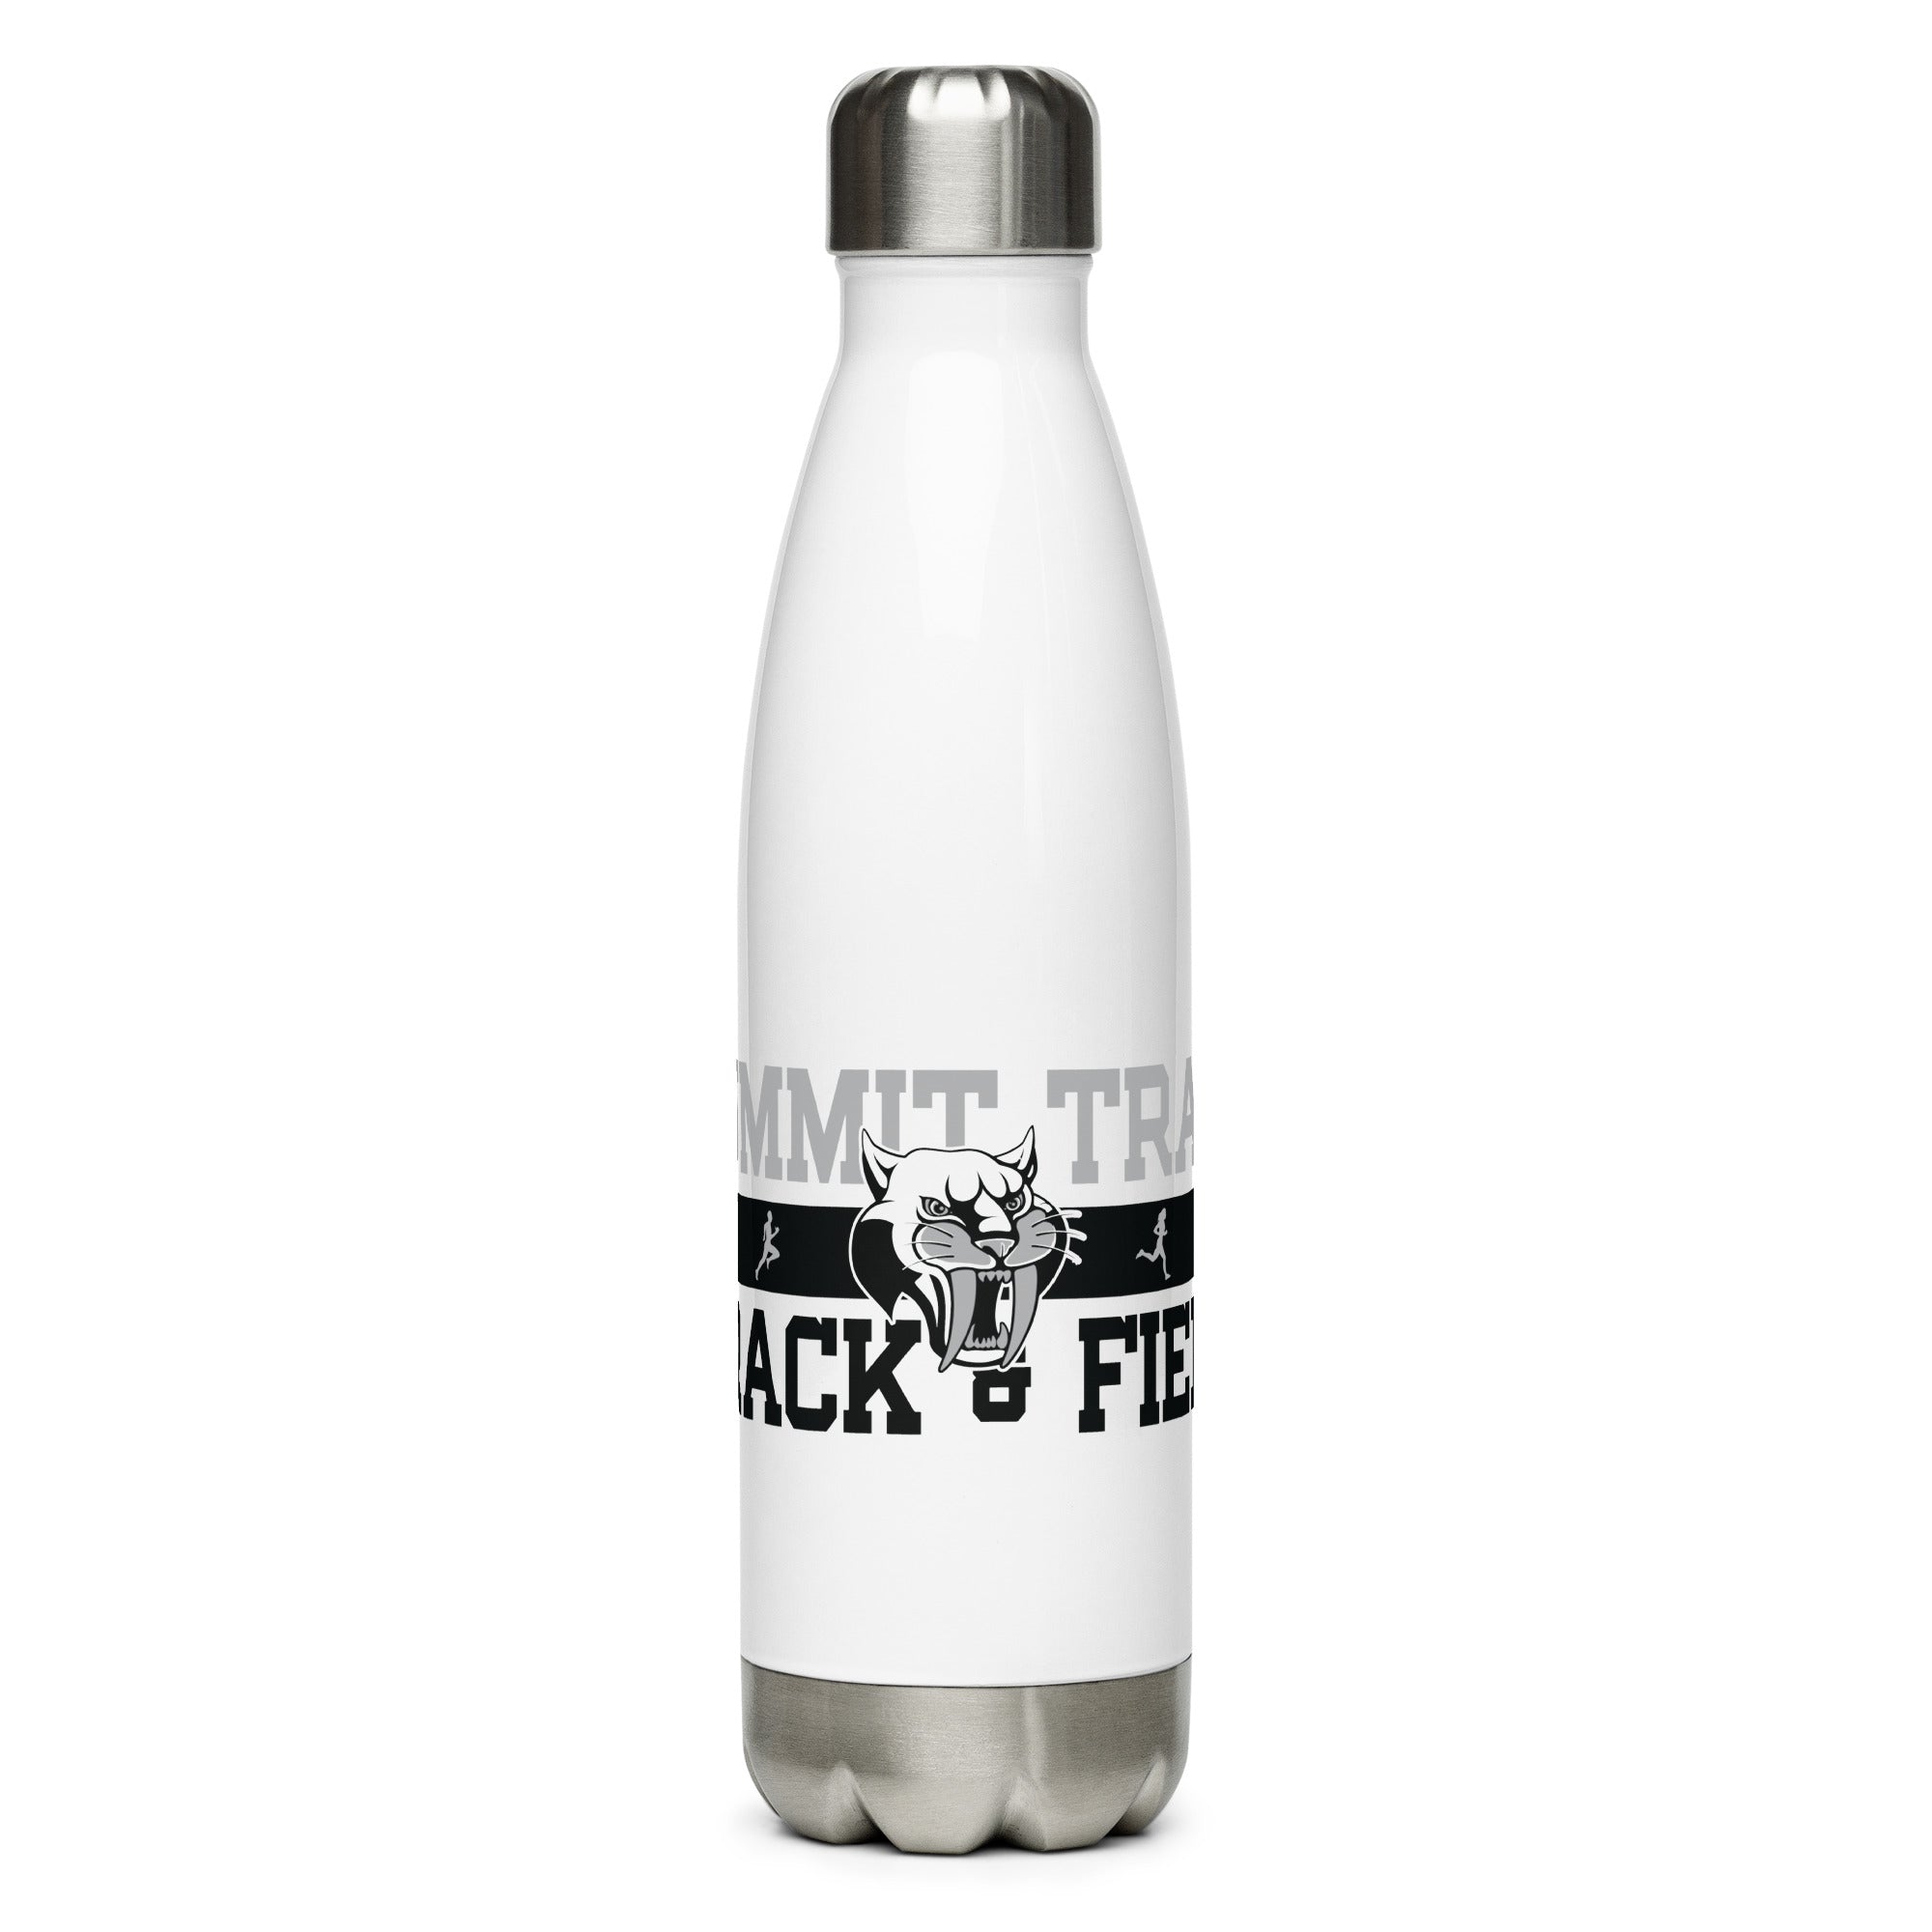 Summit Trail Middle School Track & Field Stainless Steel Water Bottle